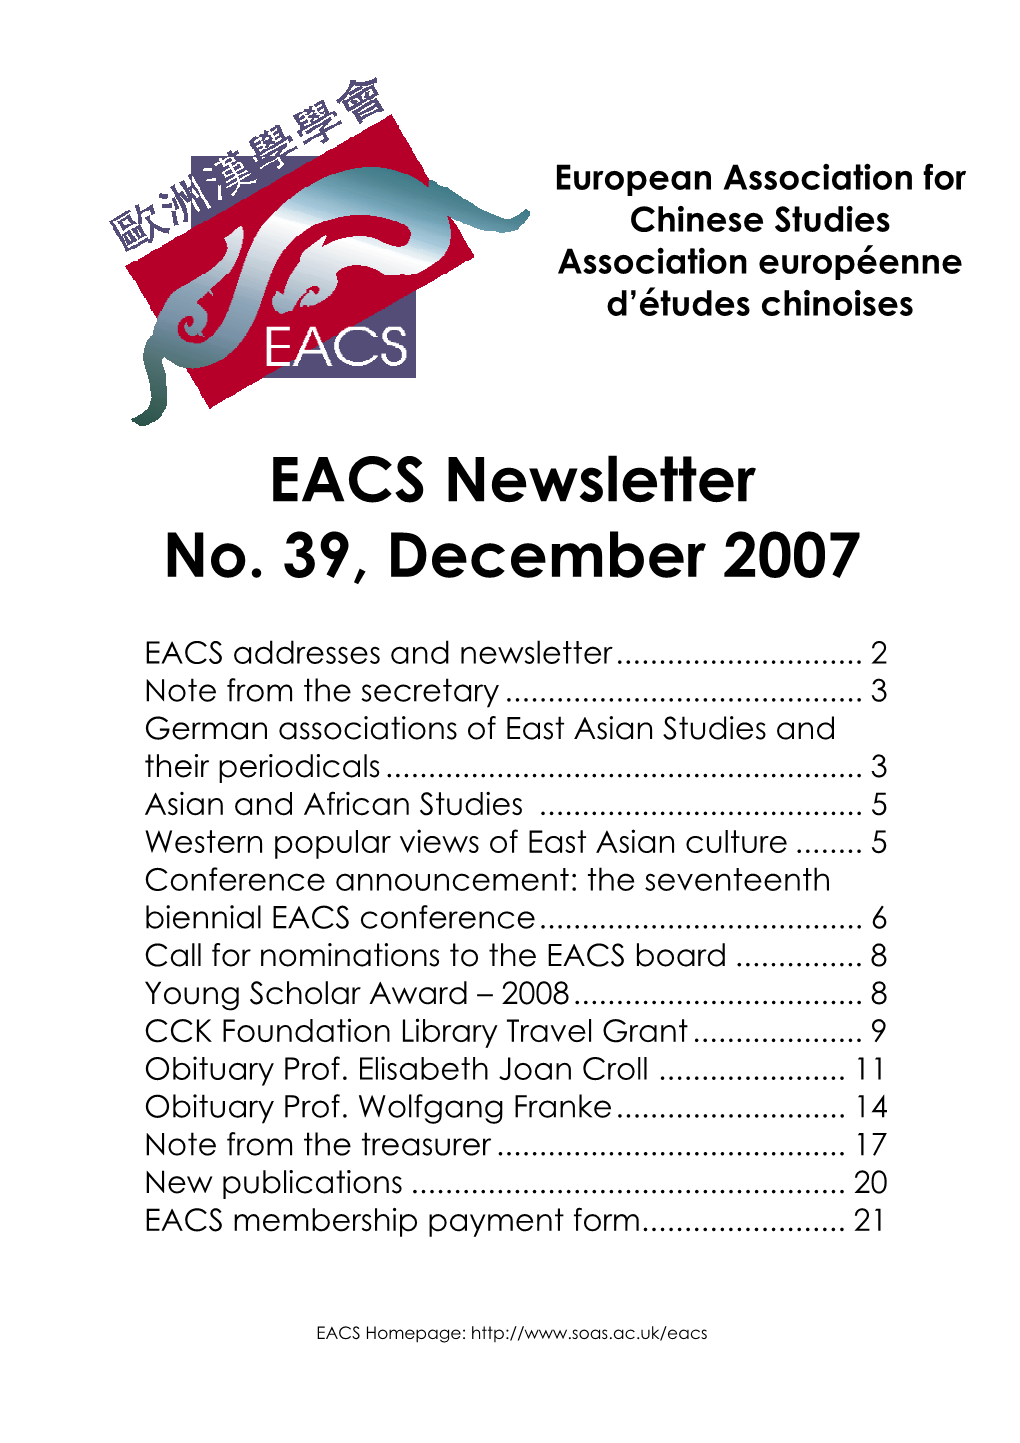 EACS Newsletter No. 39, December 2007